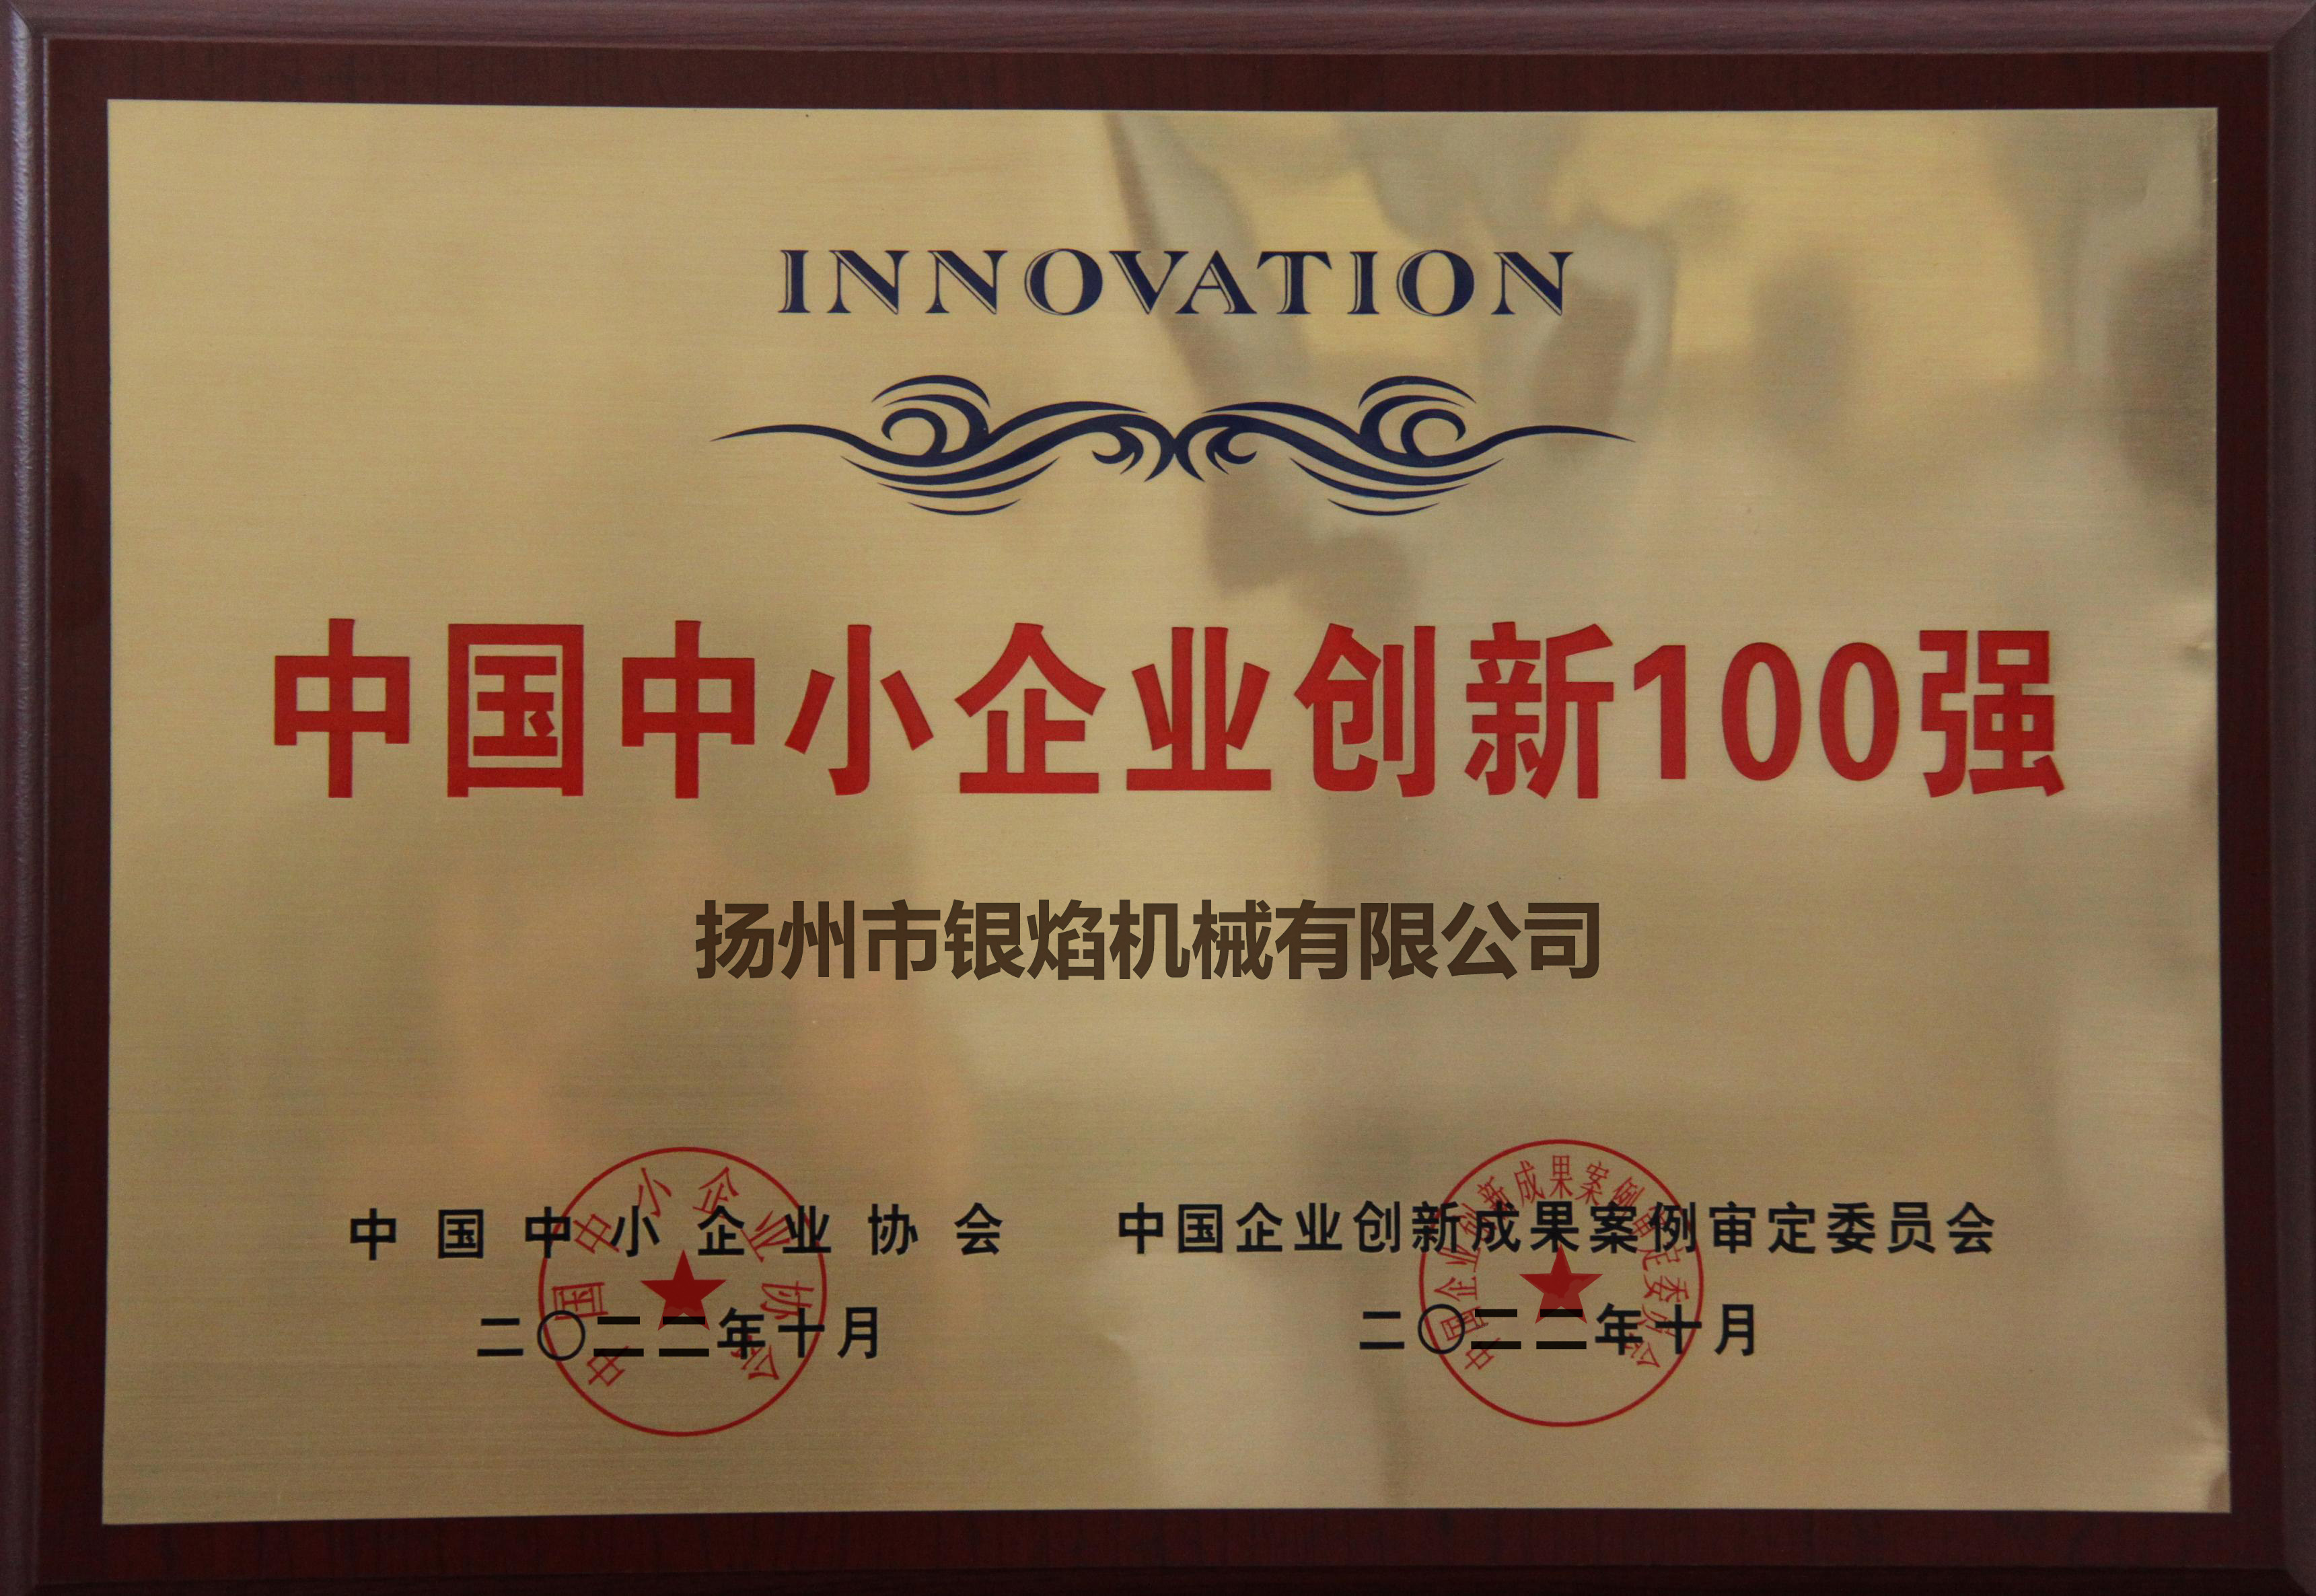 中国中小企业创新100强